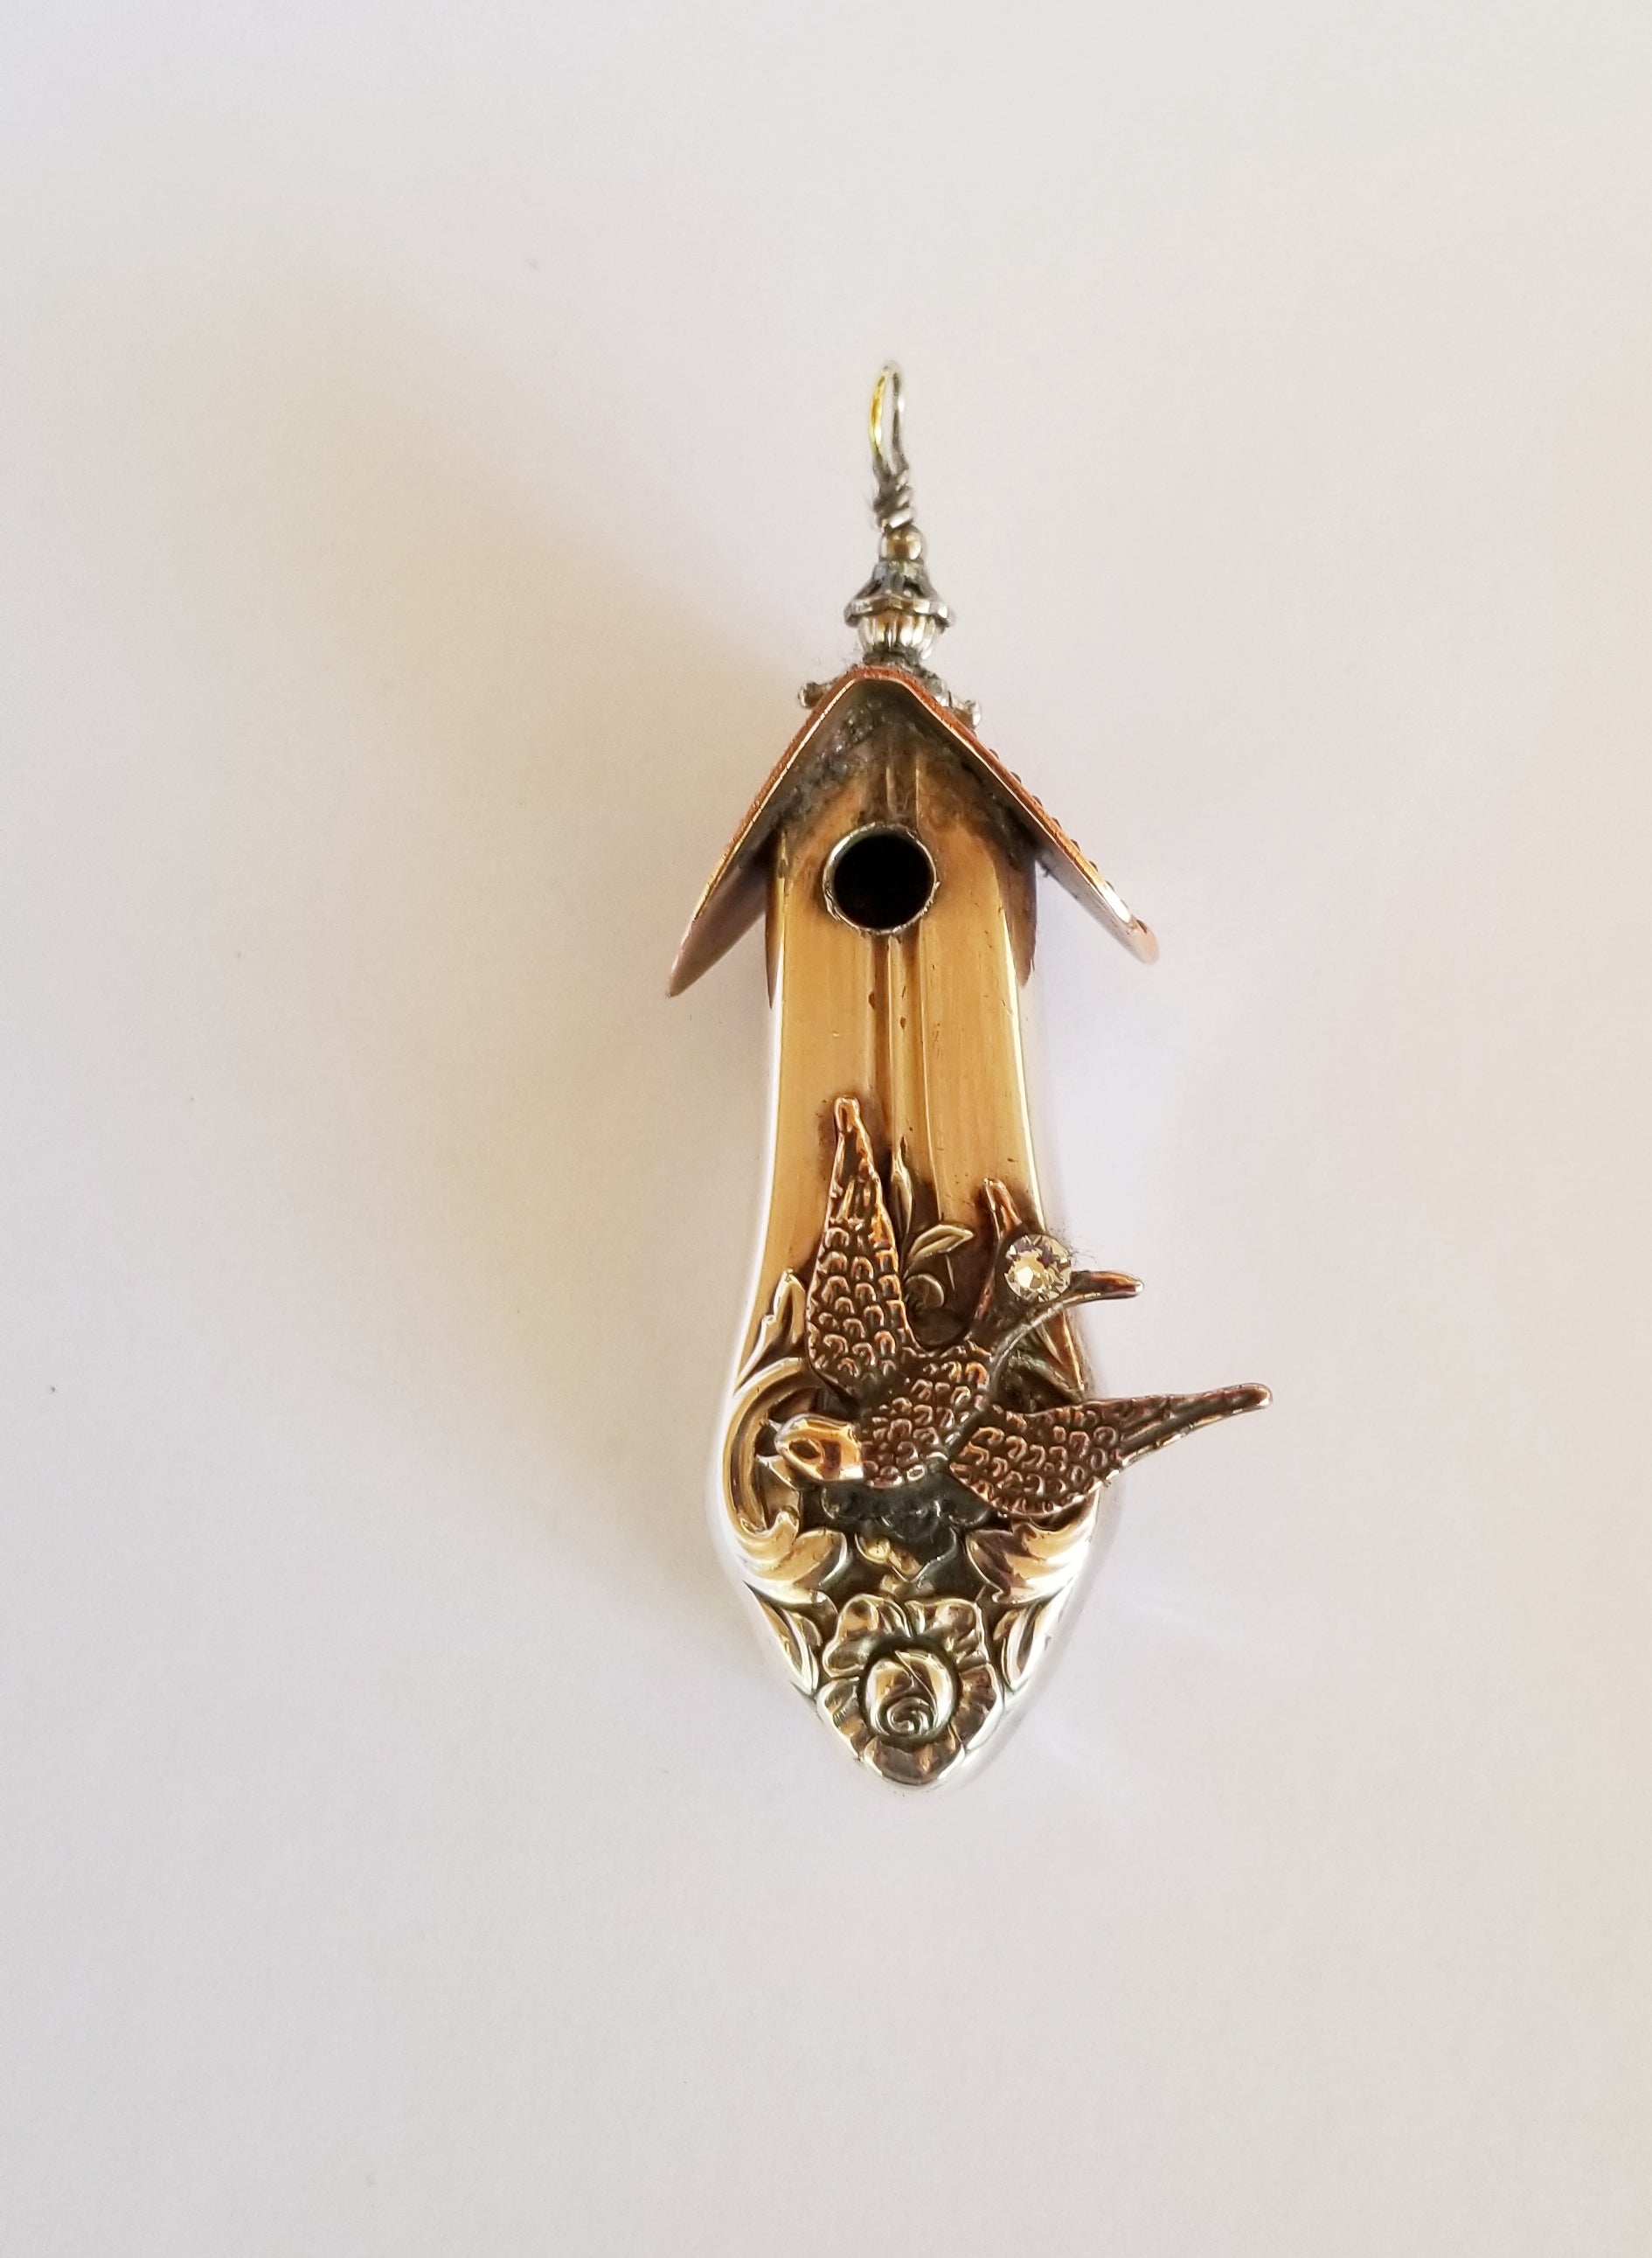 Birdhouse Necklace, Vintage Knife Handle Pendant